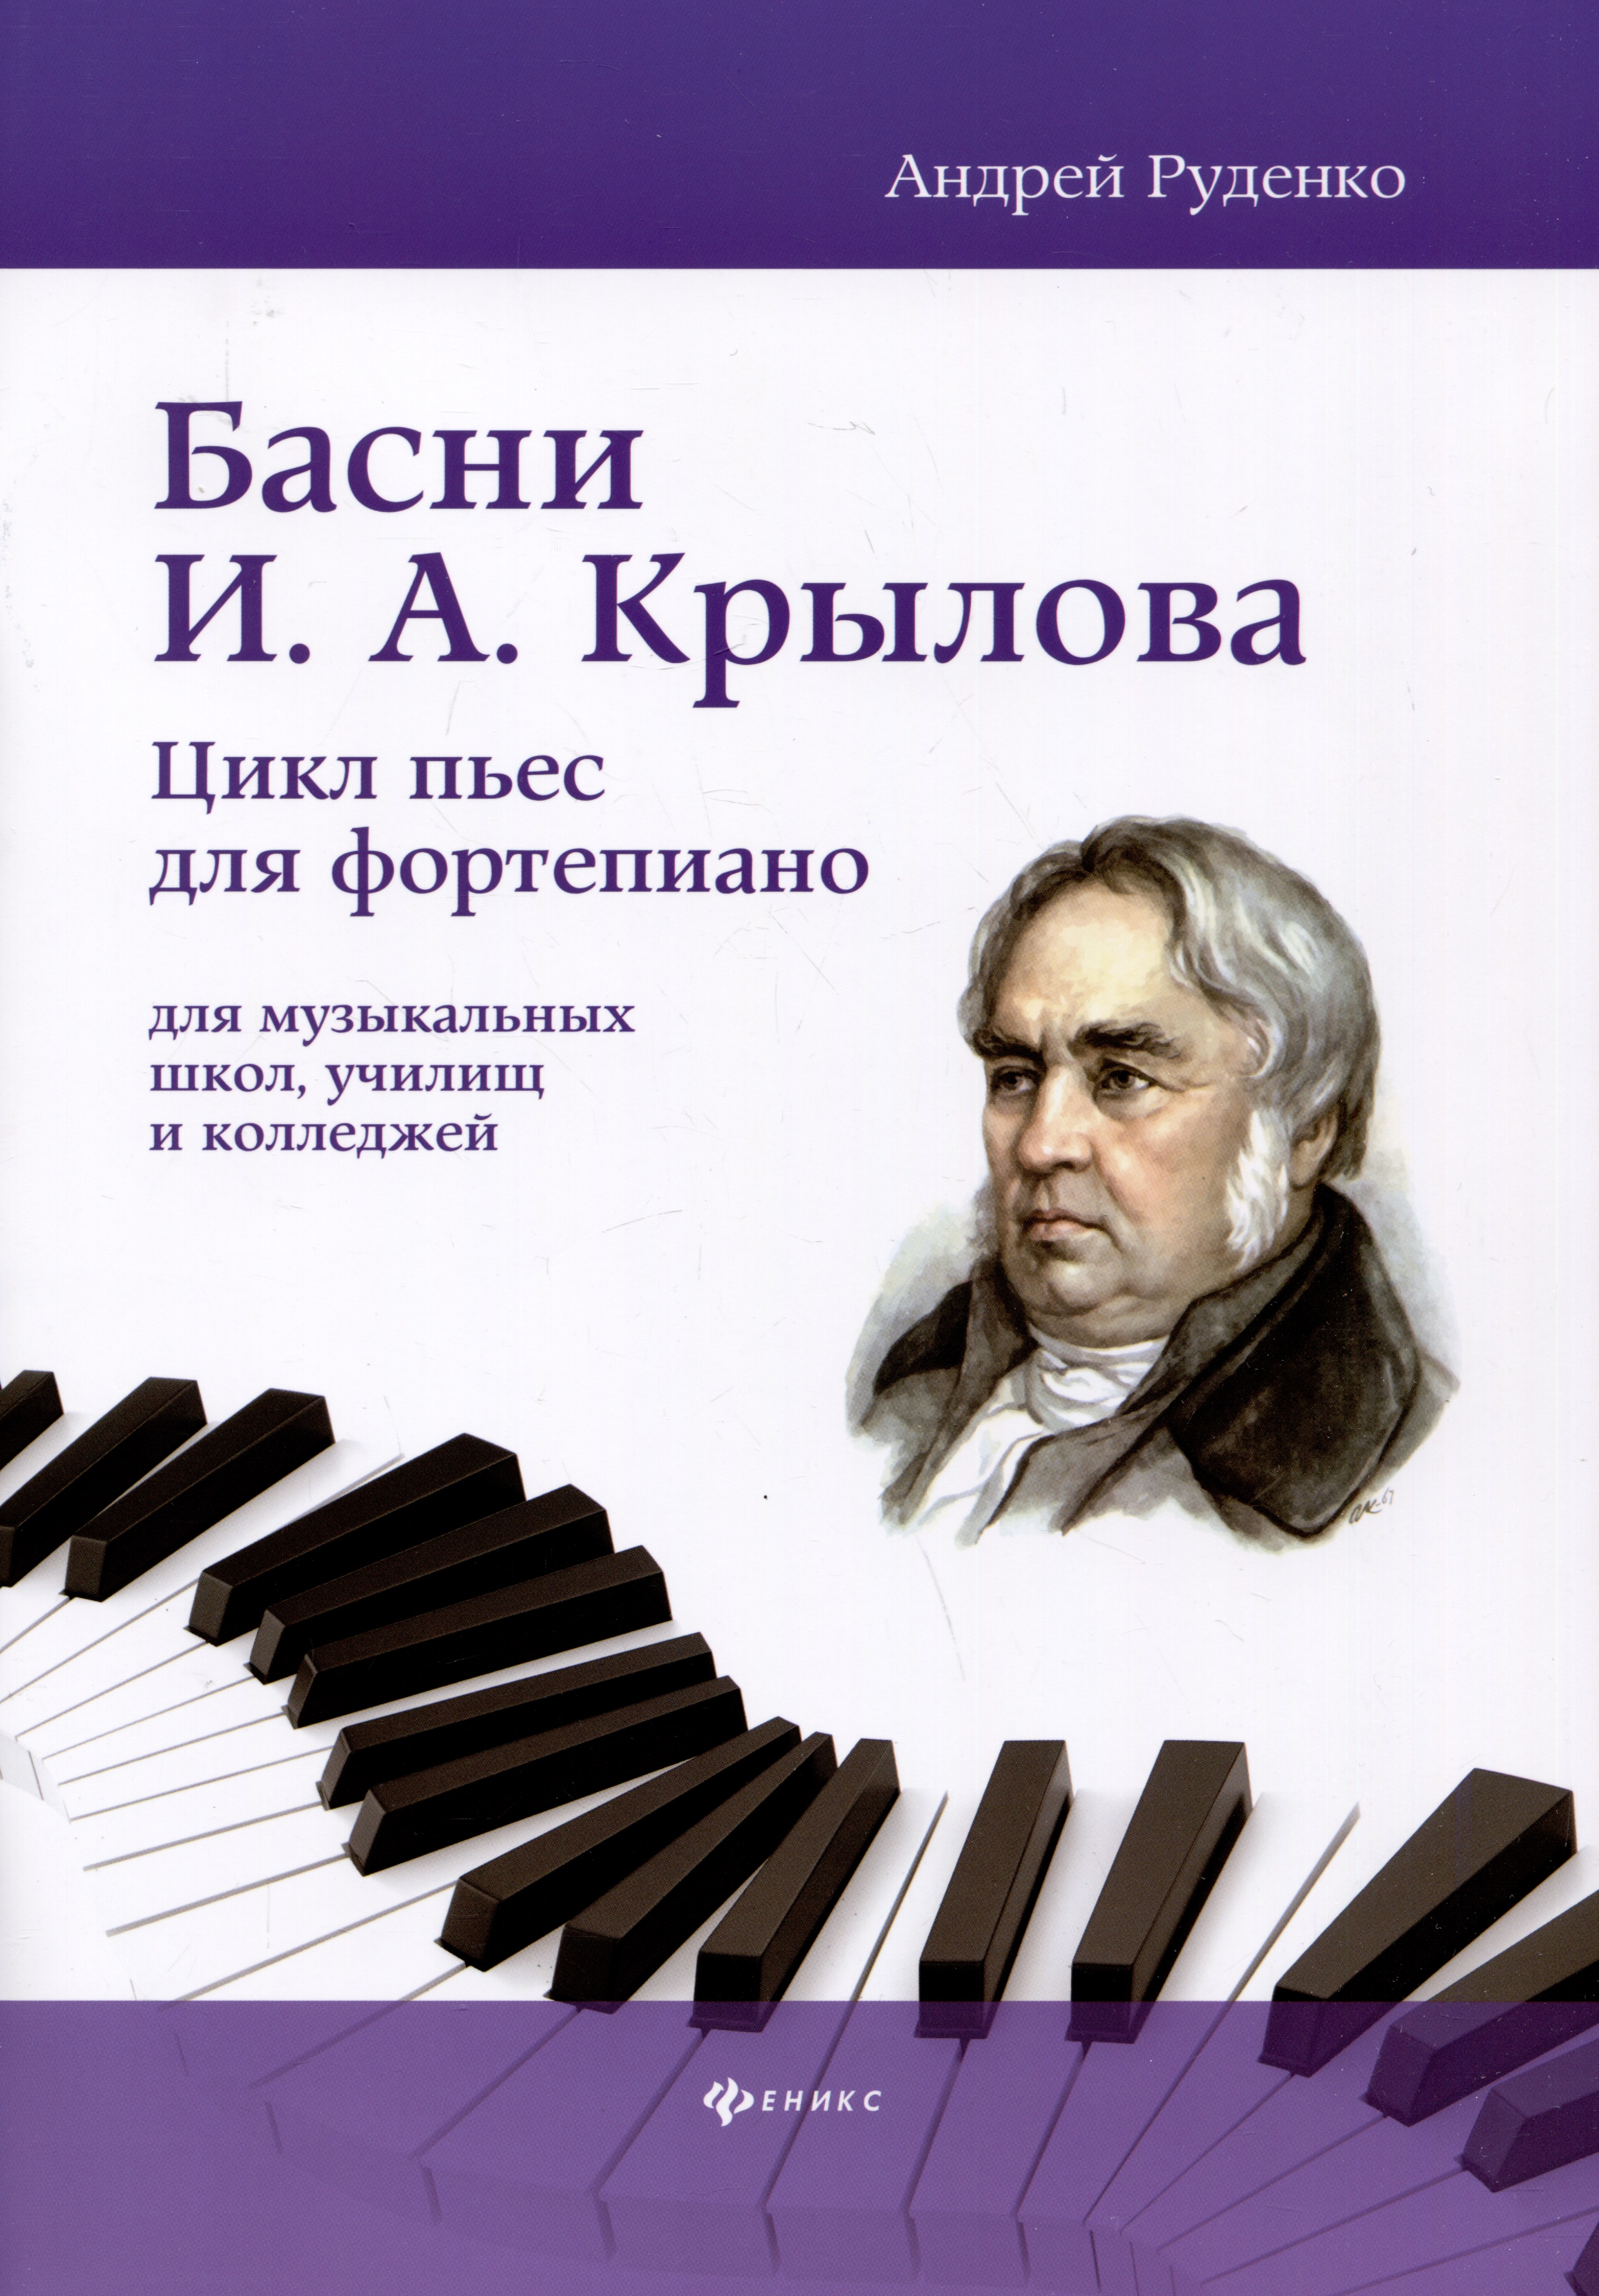 Руденко Андрей Михайлович - Басни И.А. Крылова: цикл пьес для фортепиано